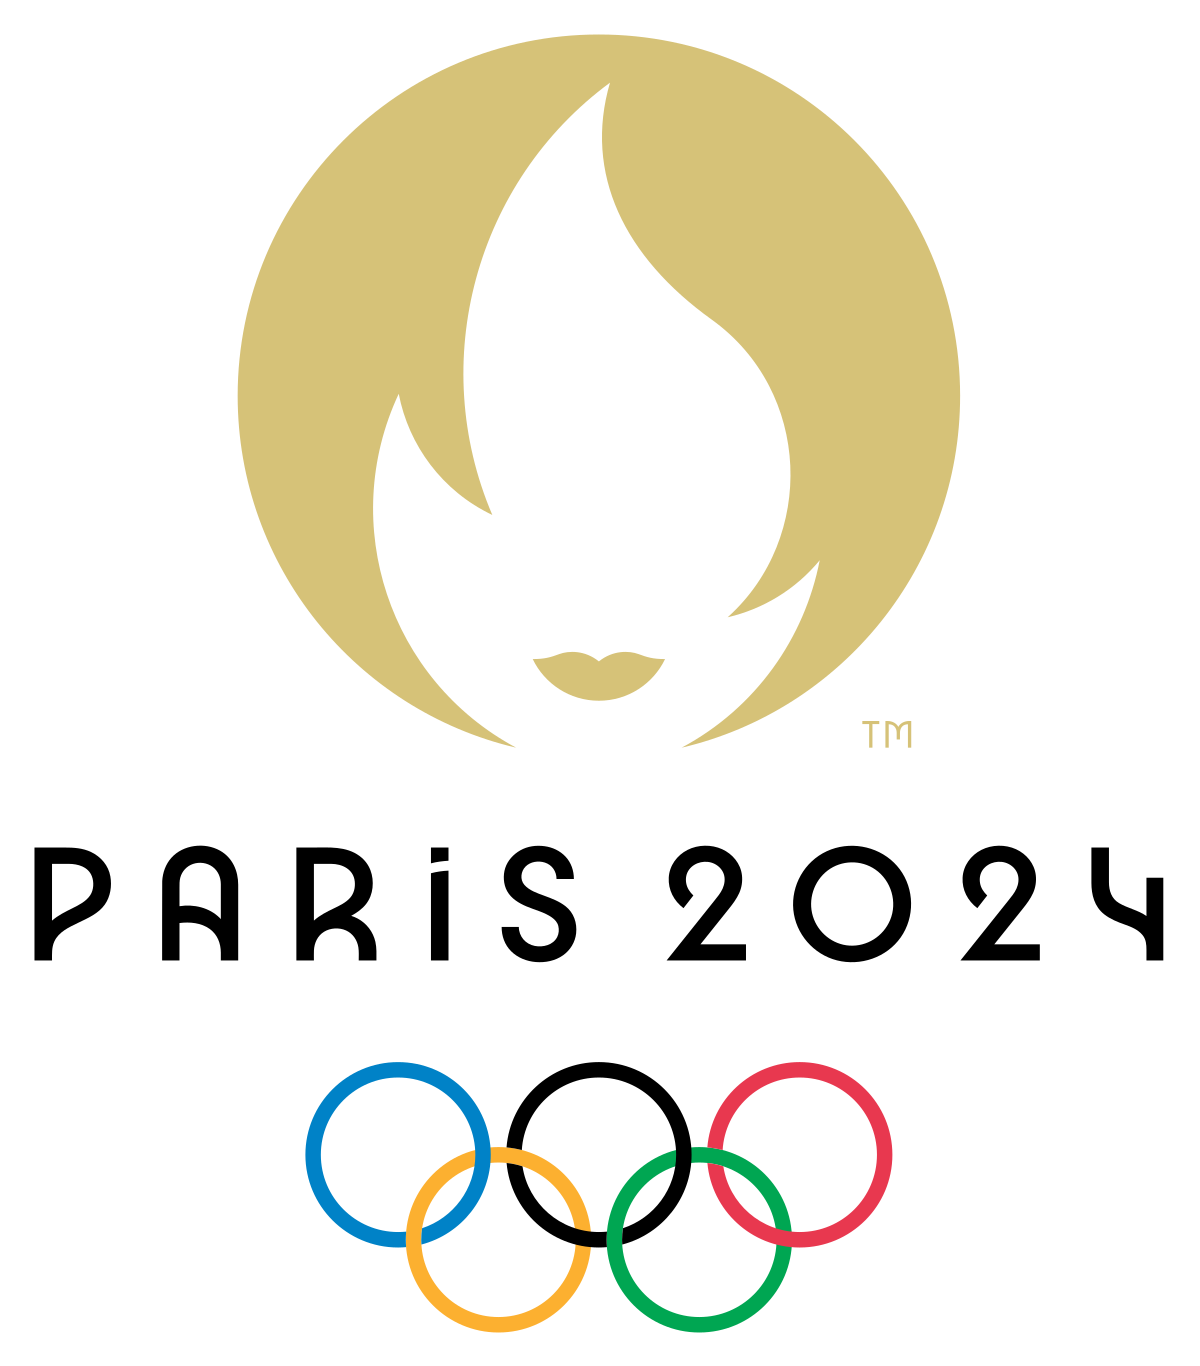 LOGO Paris - Olympische Spiele 2024